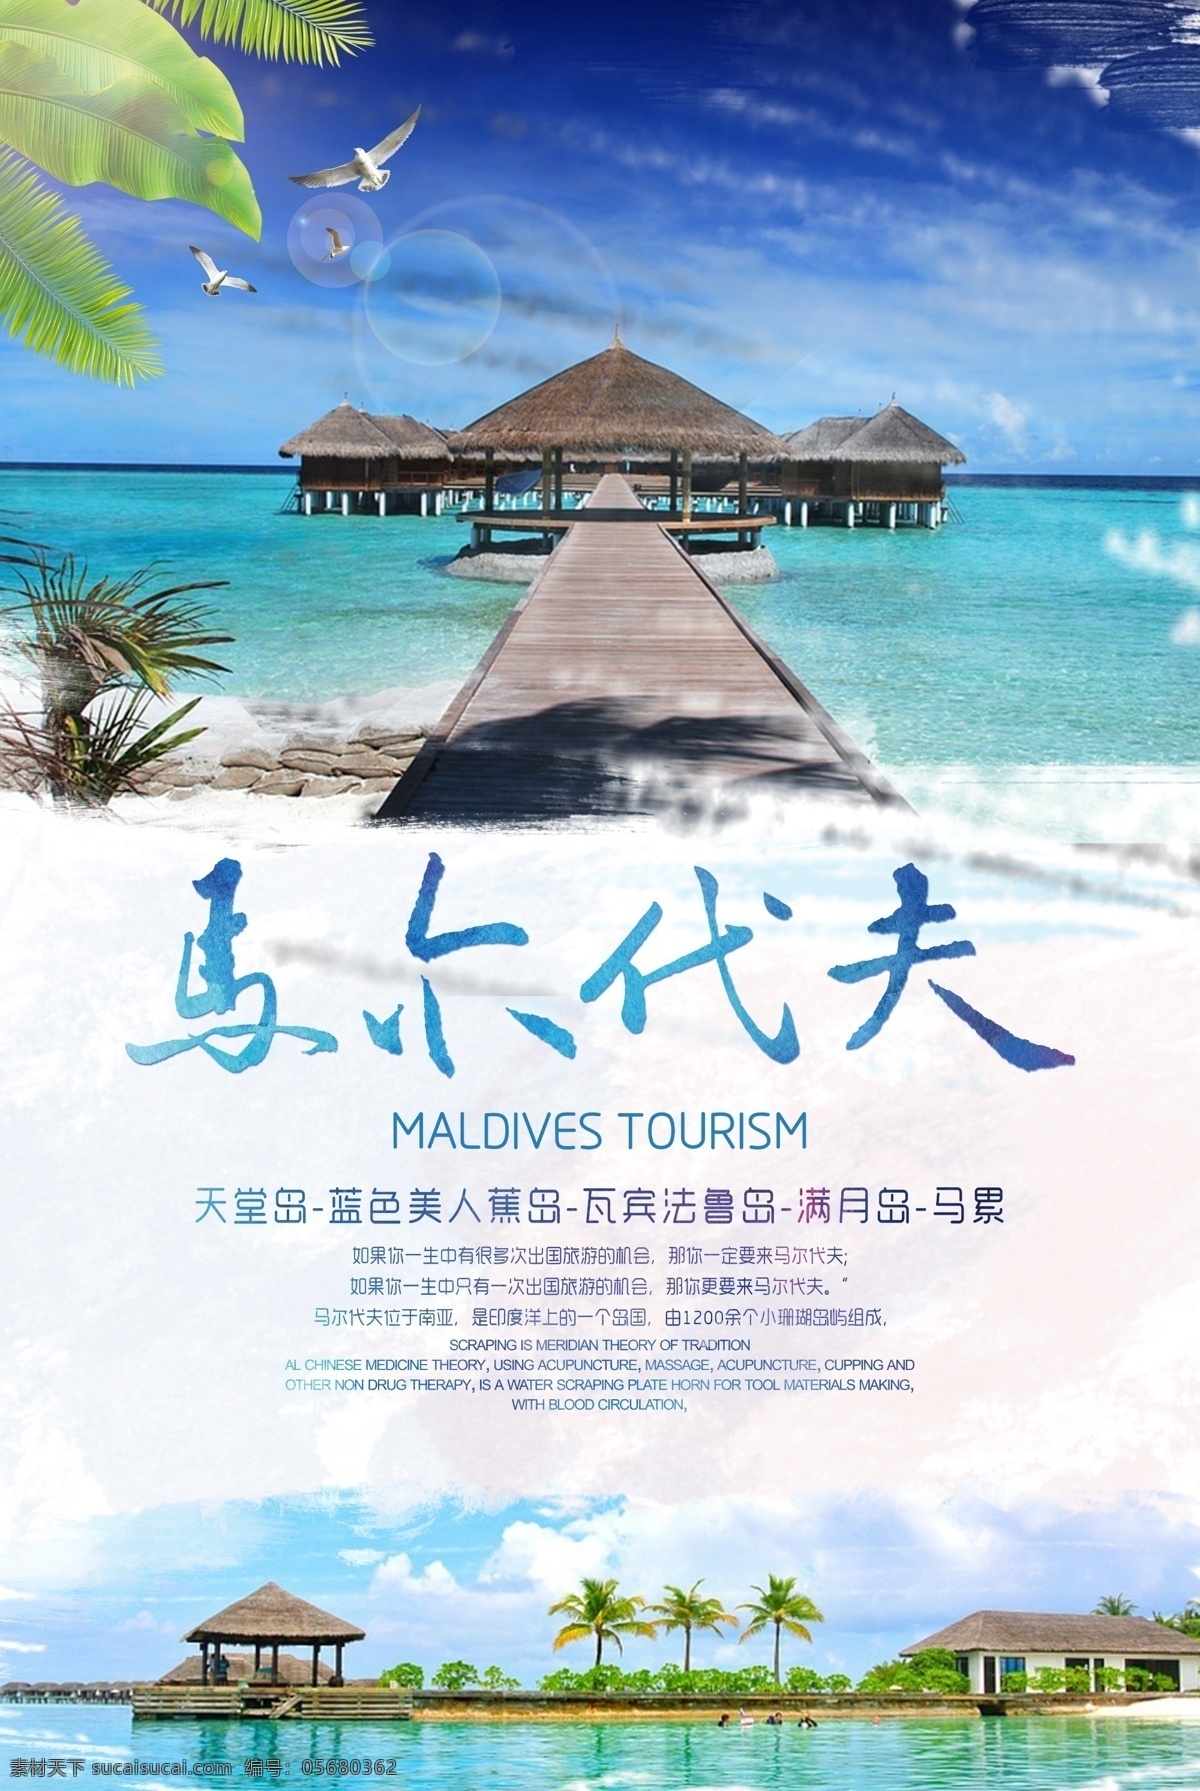 马尔代夫 旅游 宣传海报 格式 宣传 海报